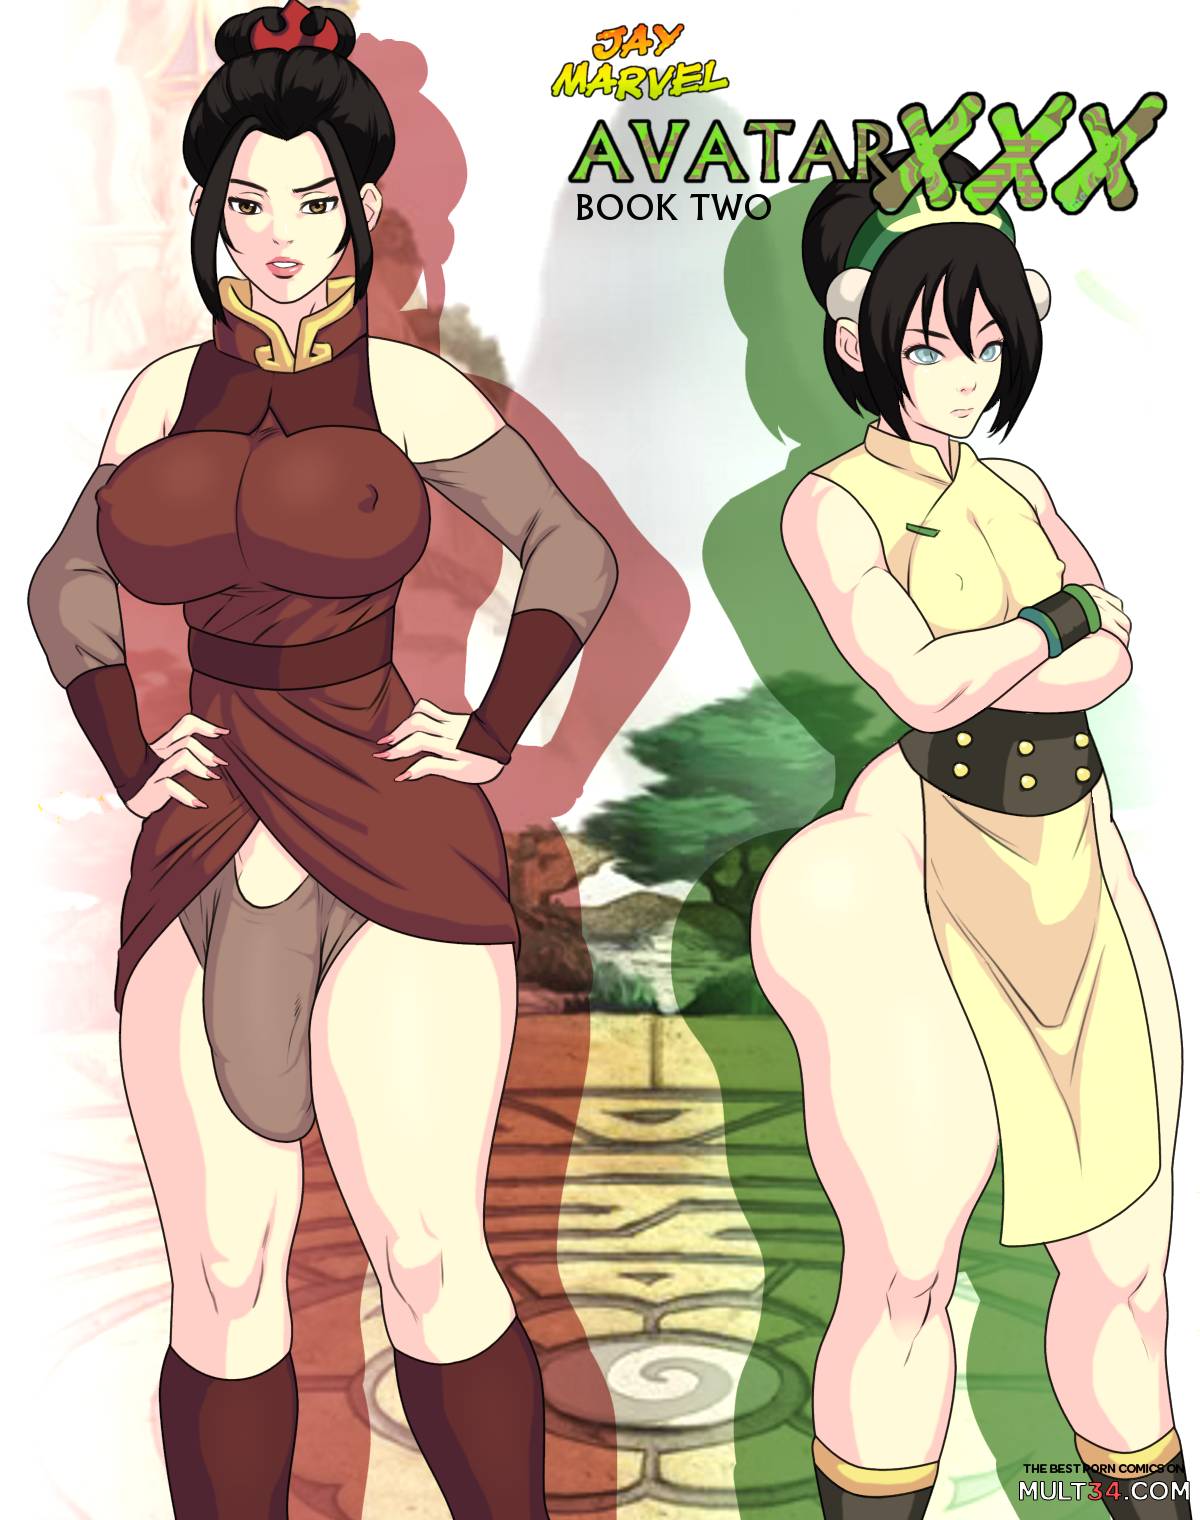 Katara Hentai Bikini - Porn comics with Katara, the best collection of porn comics